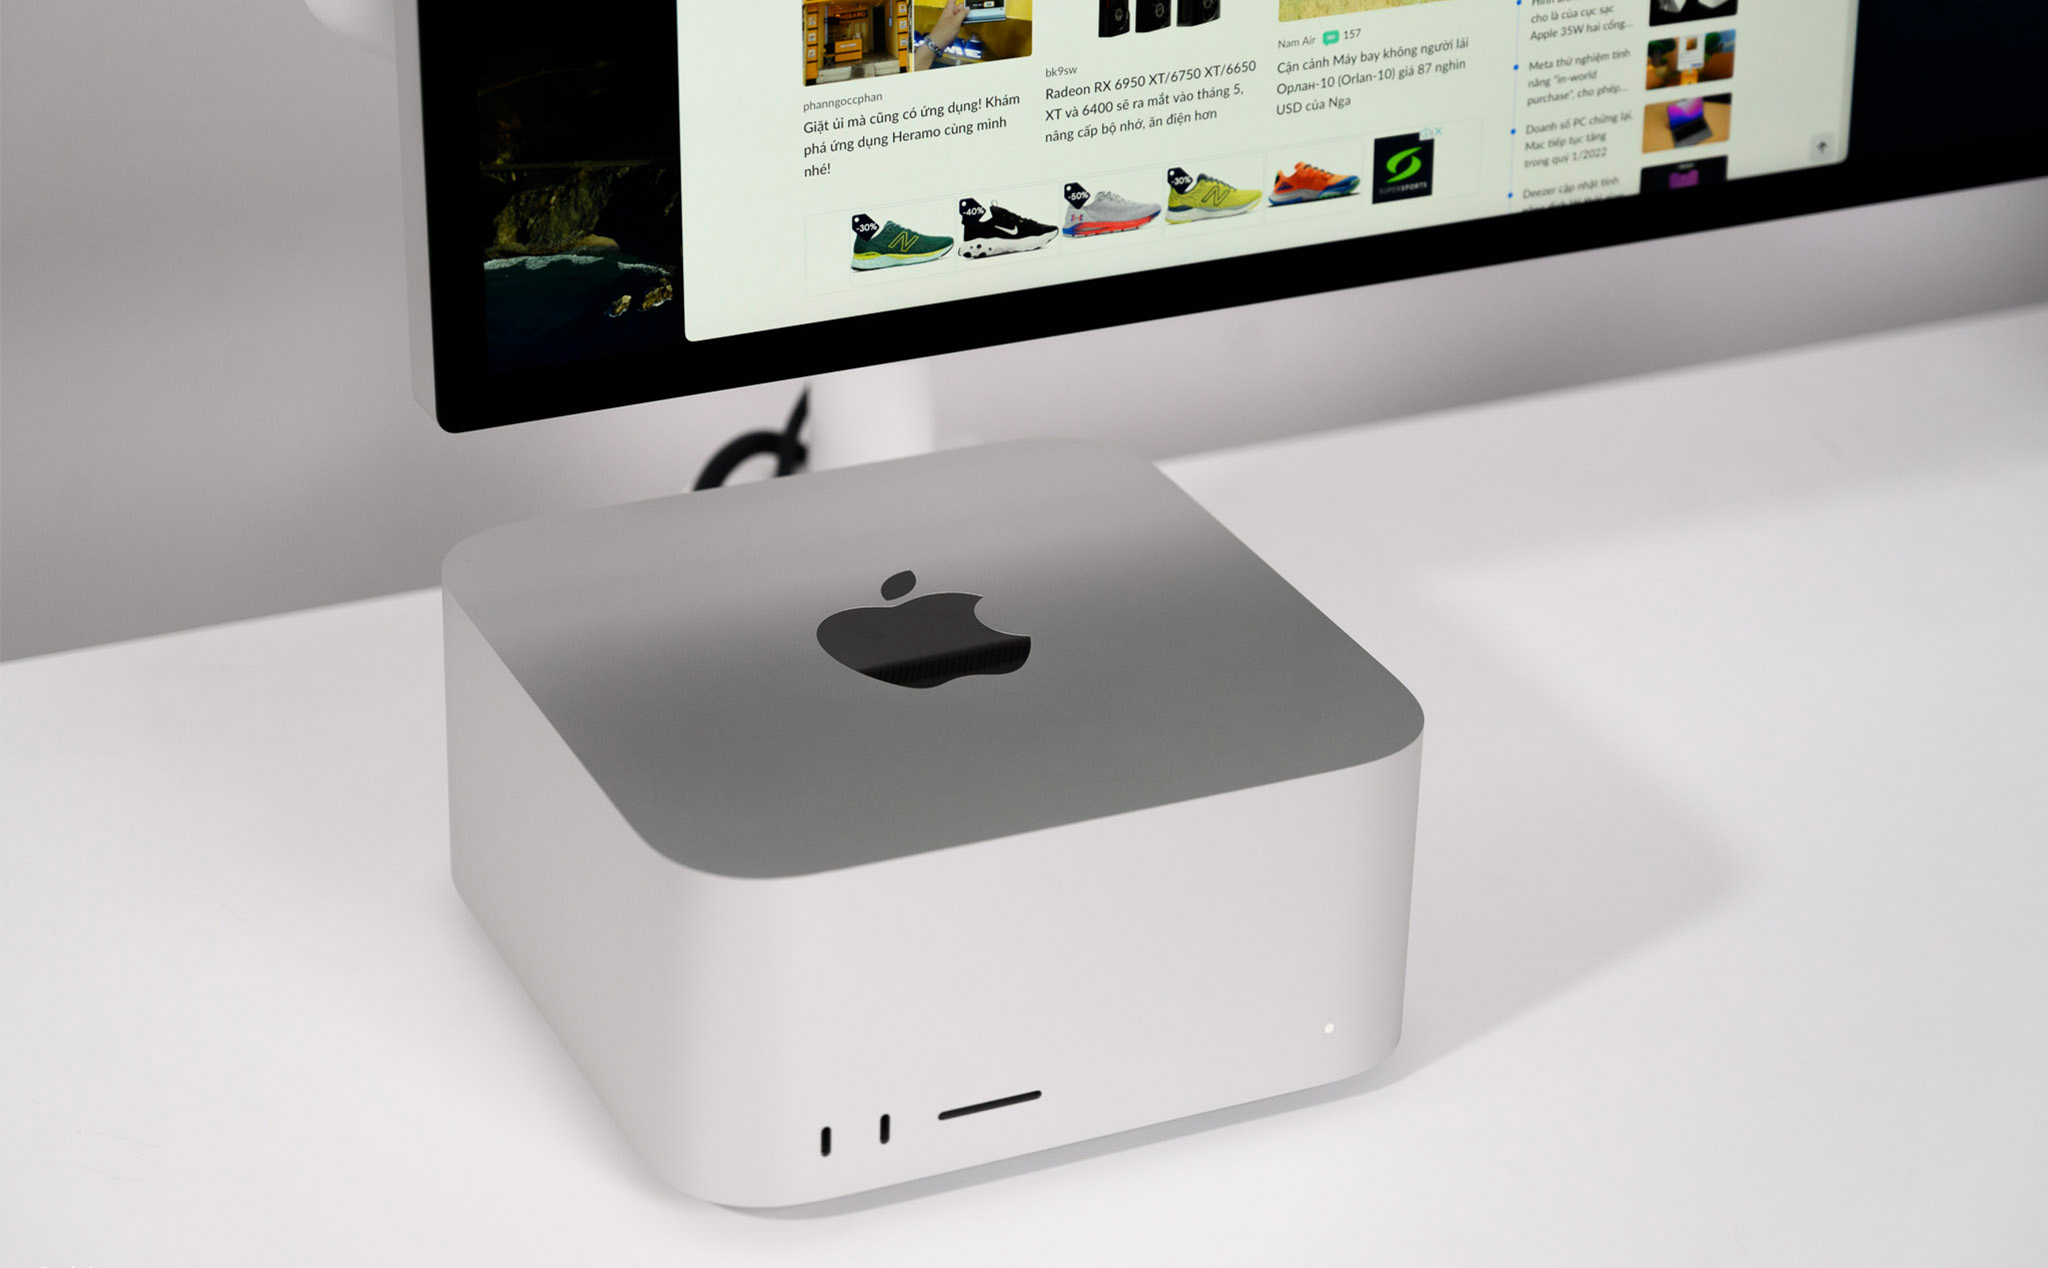 Apple bắt đầu bán Mac Studio refurbished, rẻ hơn hàng mới từ 200 đến 400 USD tuỳ cấu hình